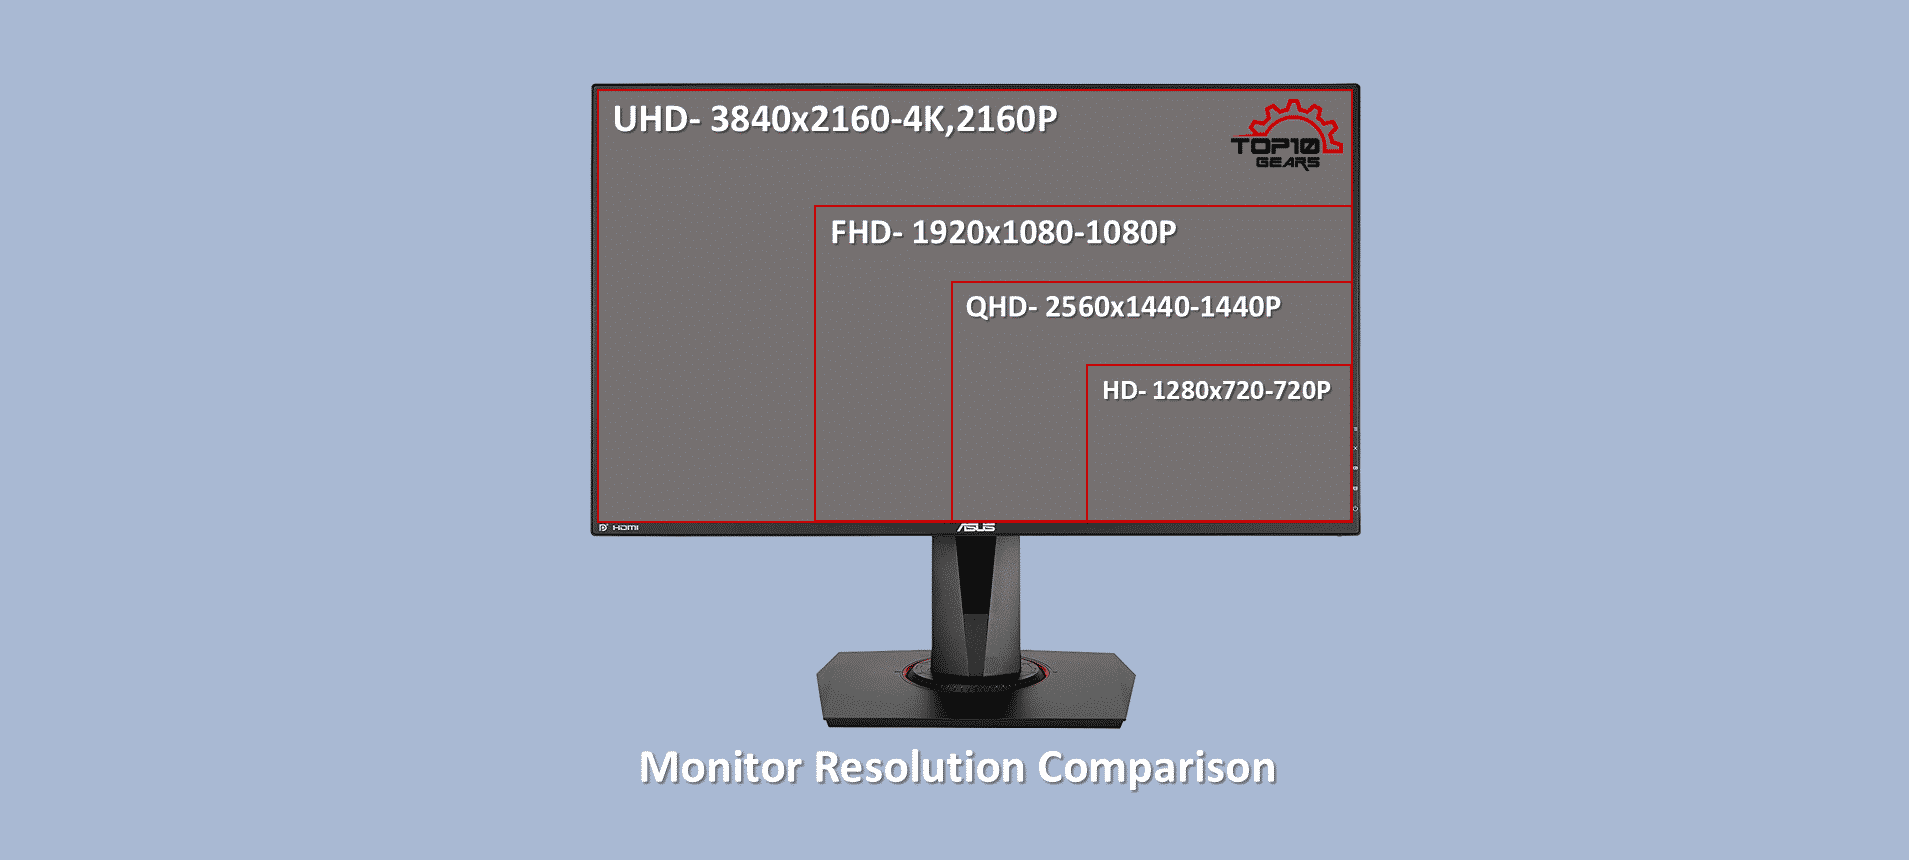 Monitor resolution comparison